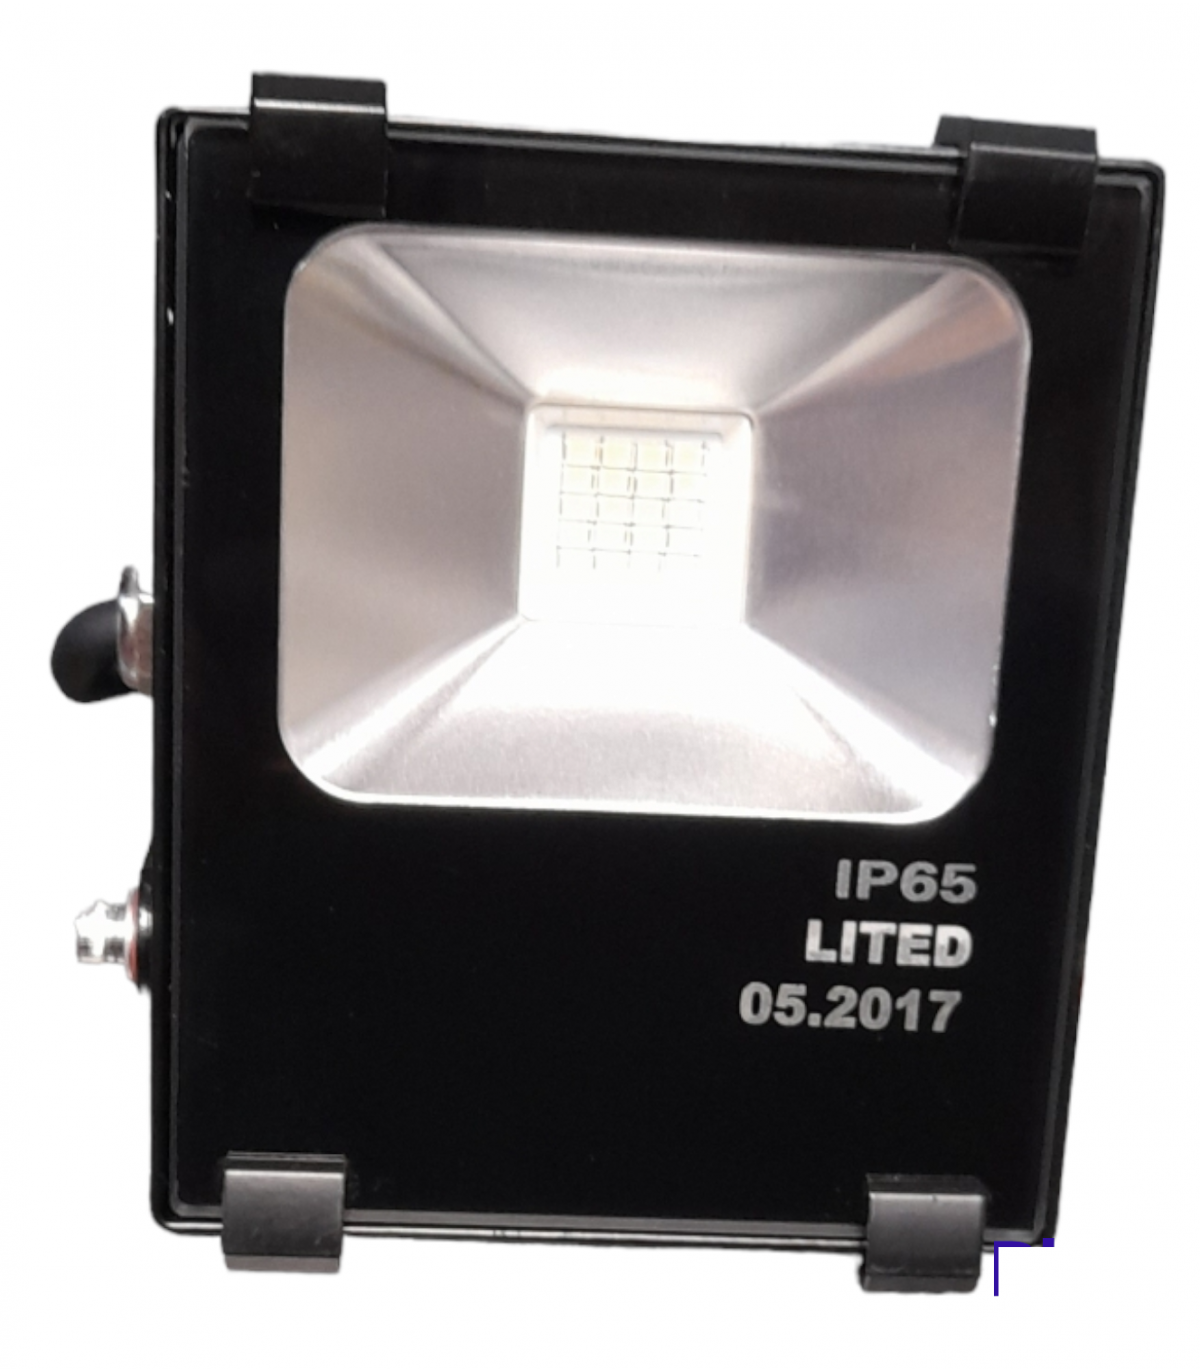 PROJECTEUR LED EXTERIEUR 10 Watts Noir 4000K IP65 Blanc Froid